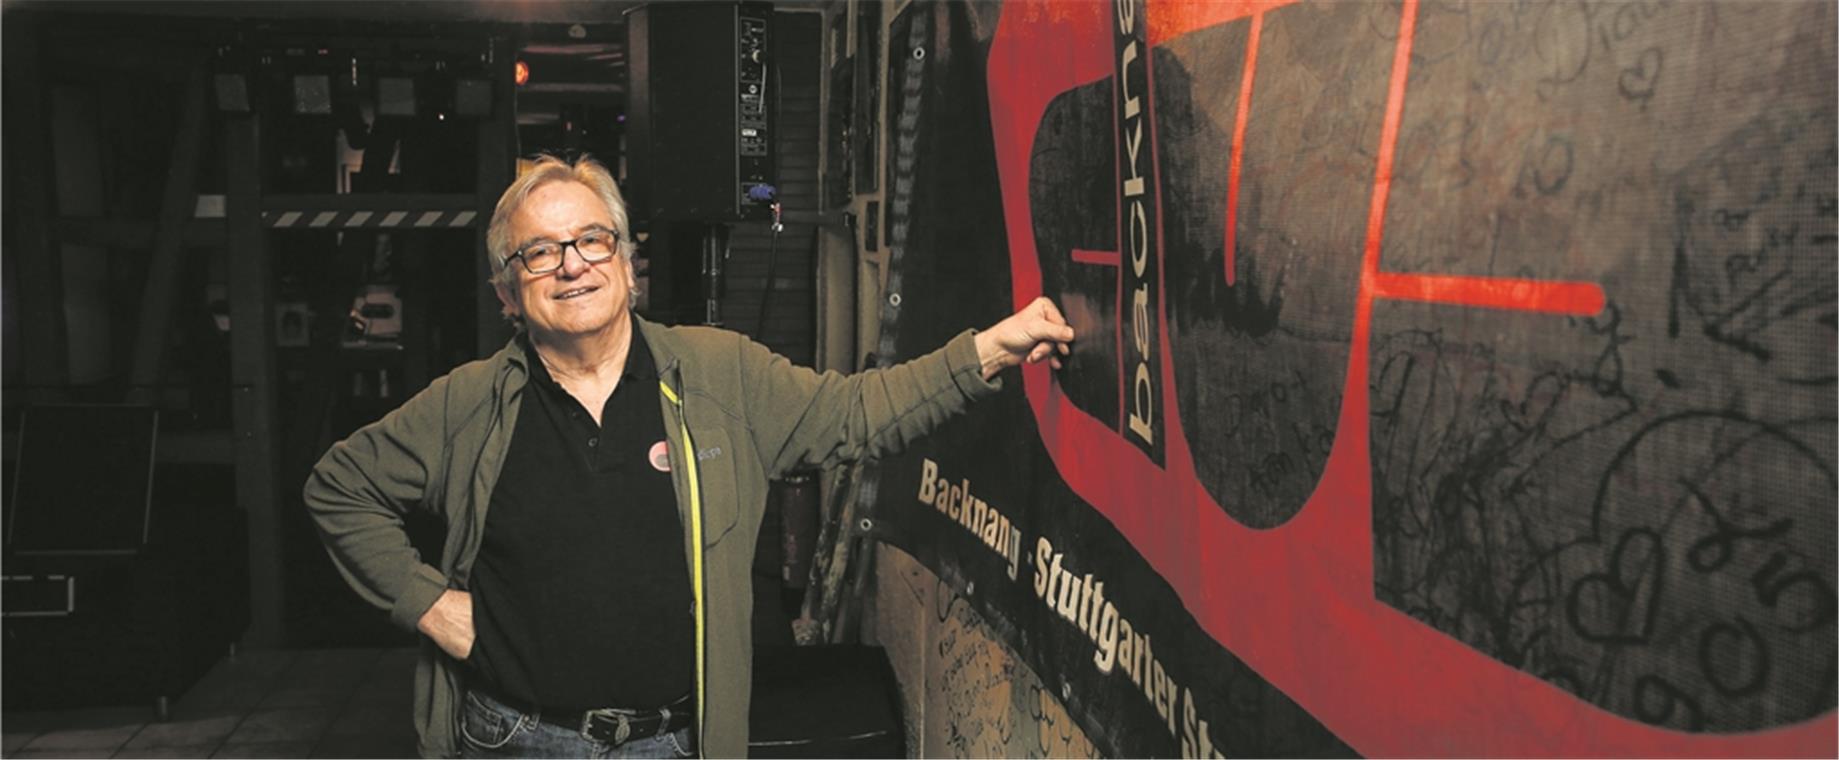 Reinhard „Chap“ Kobald, Betreiber der Rockdiscothek, schaut zufrieden auf die zwölf Jahre zurück, für die er den Club aus der Versenkung geholt hat. Foto: A. Becher